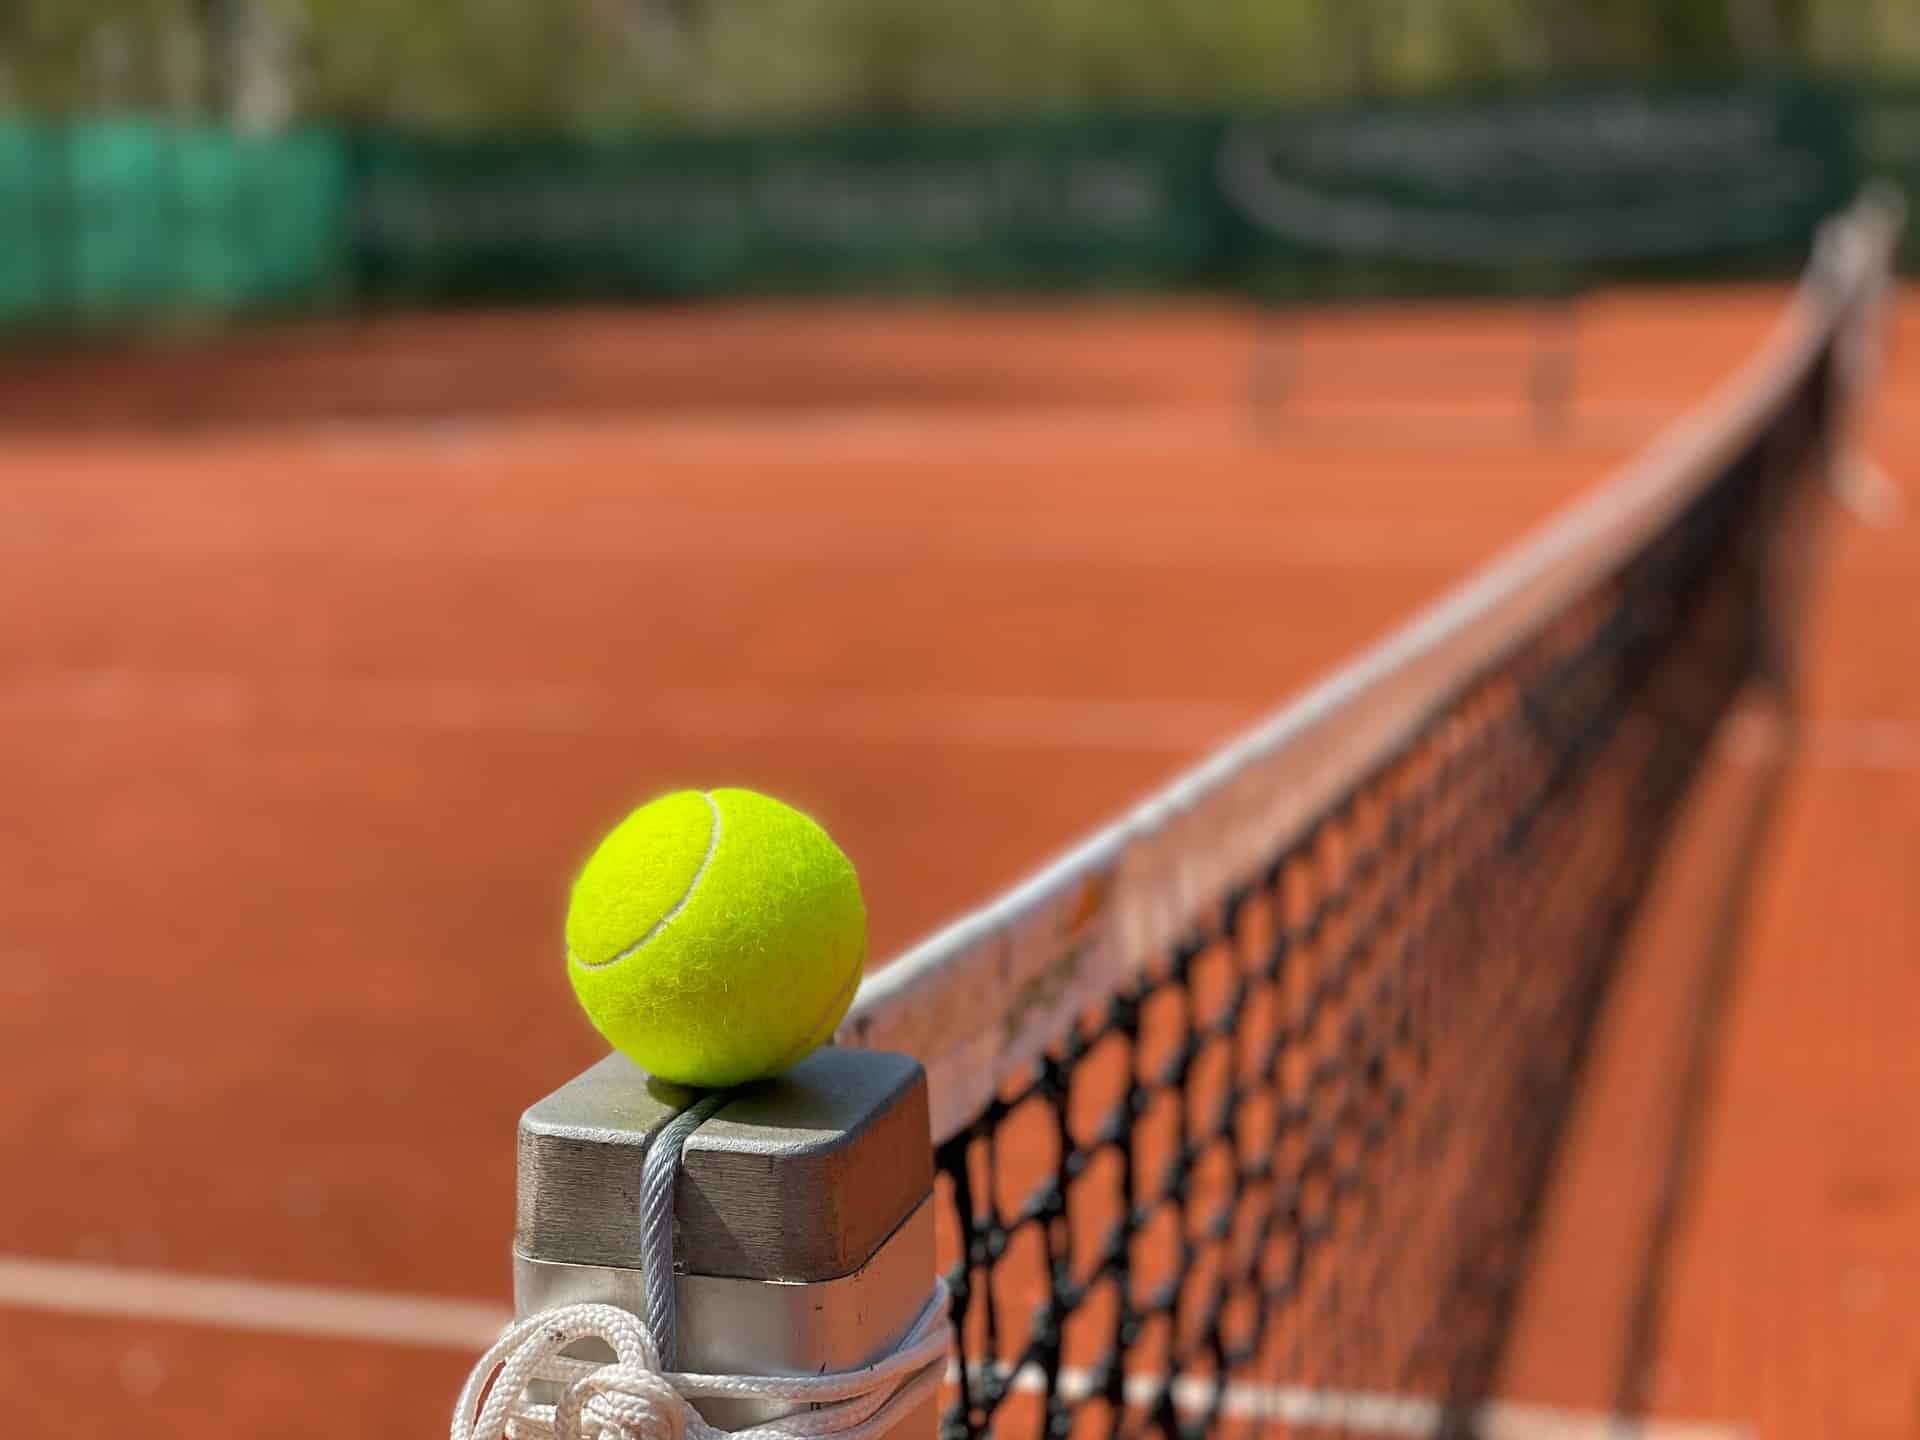 Jak doskonalić grę przy siatce w tenisie ziemnym? 3 praktyczne porady